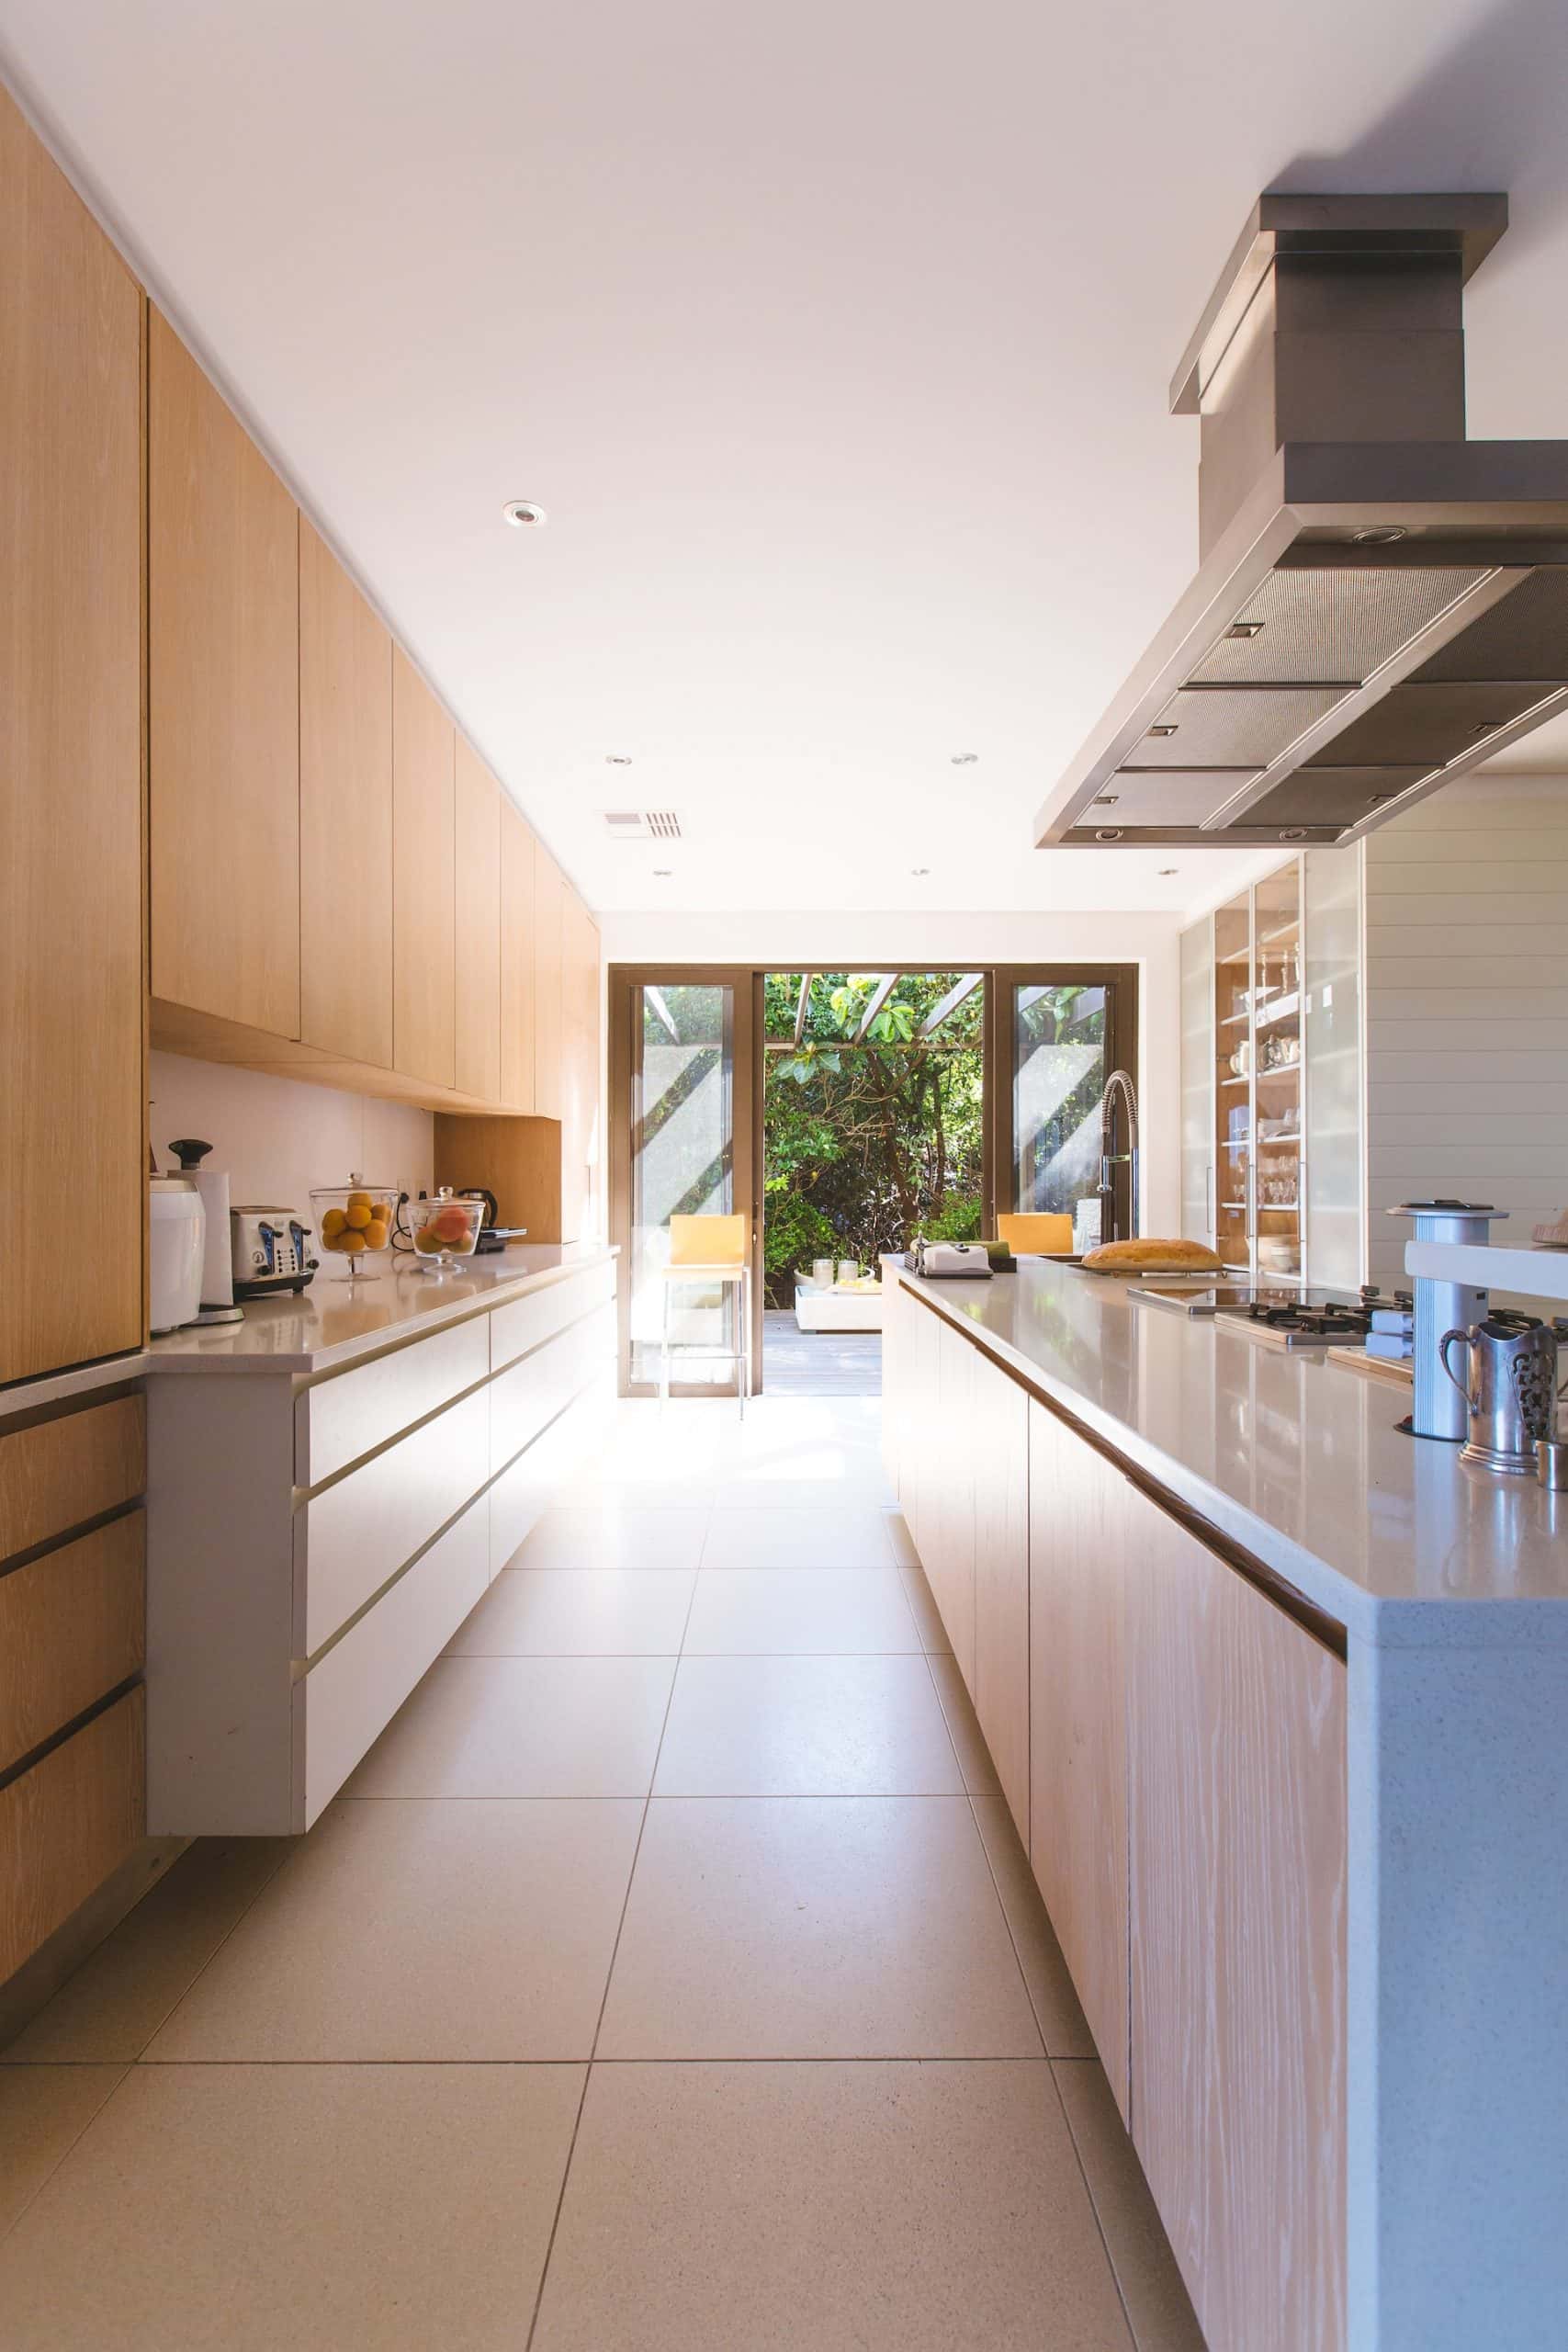 11 Smart Kitchen Designs: The Future of Home Decor